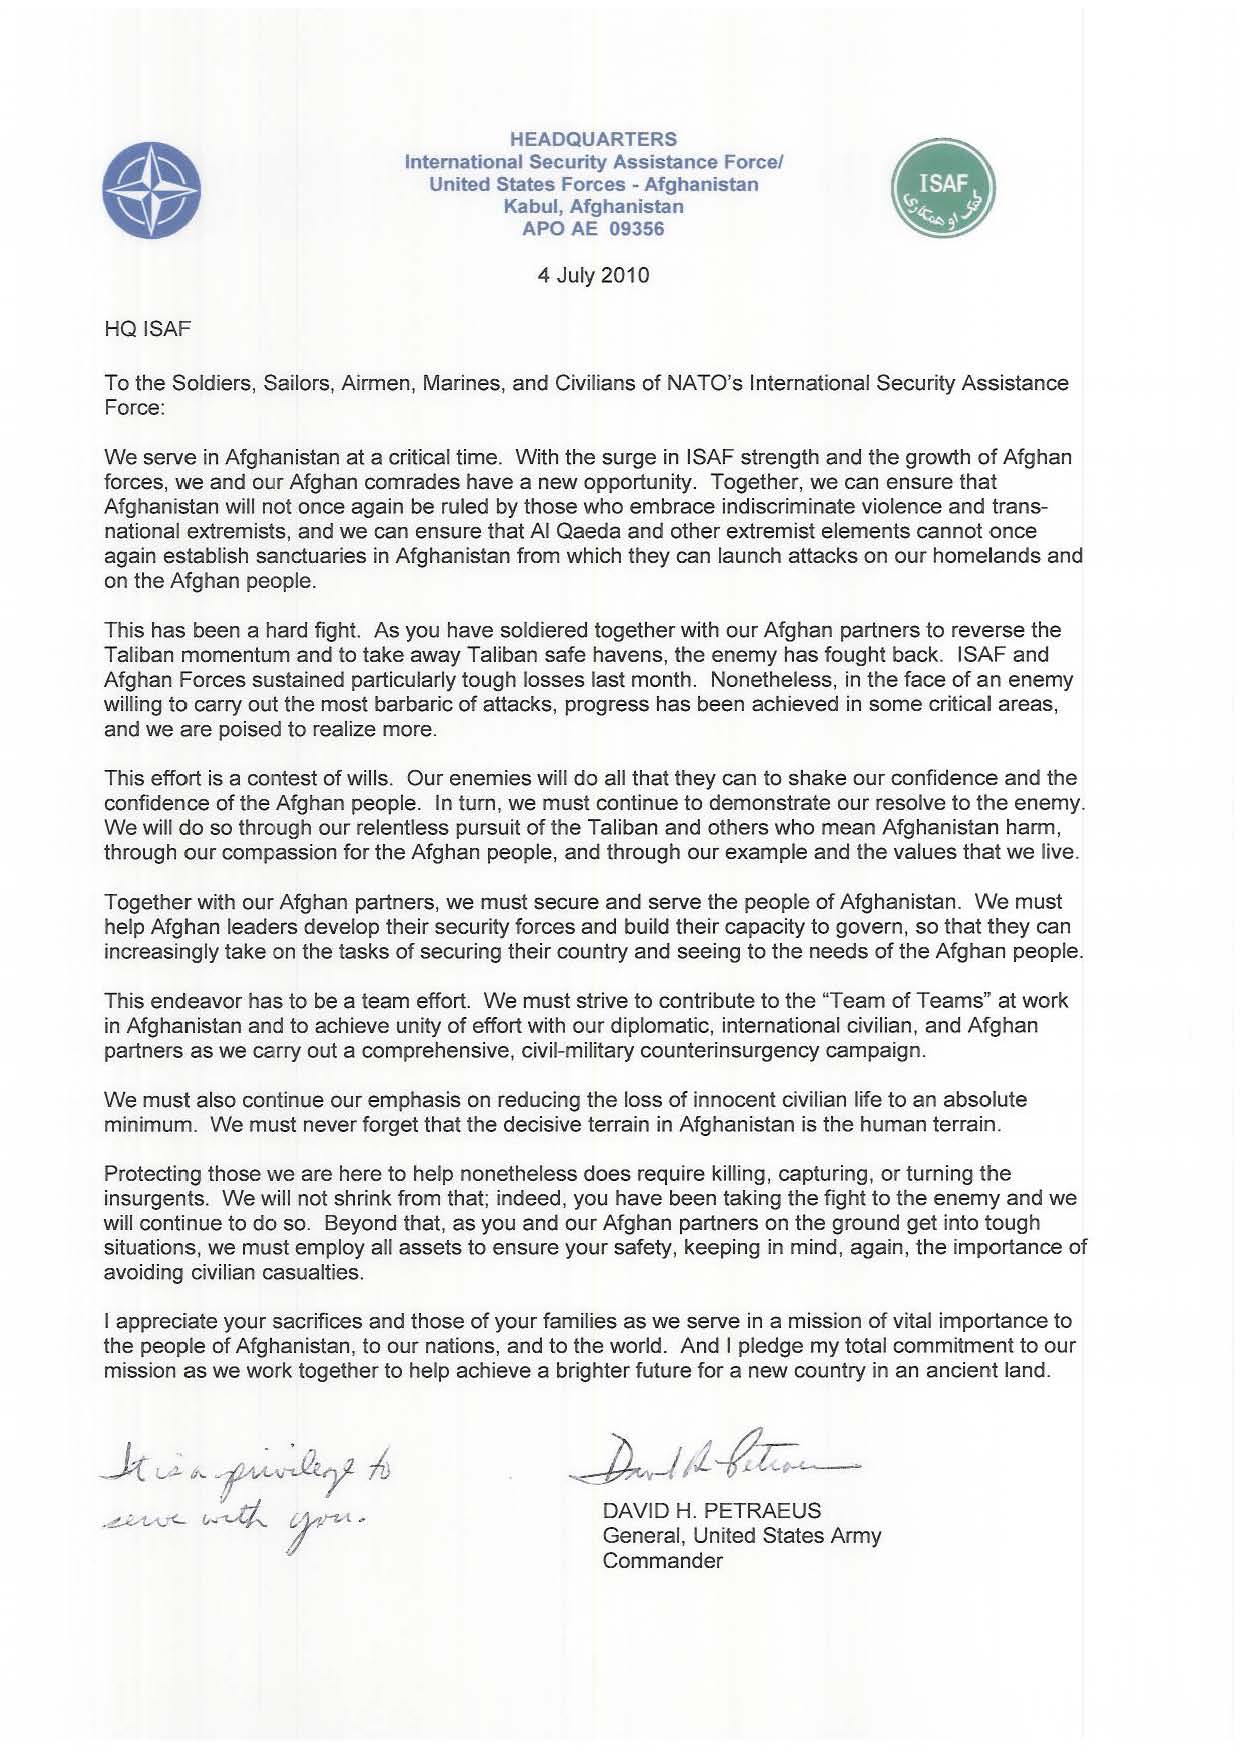 Gen Petraeus Letter to the Troops.jpg